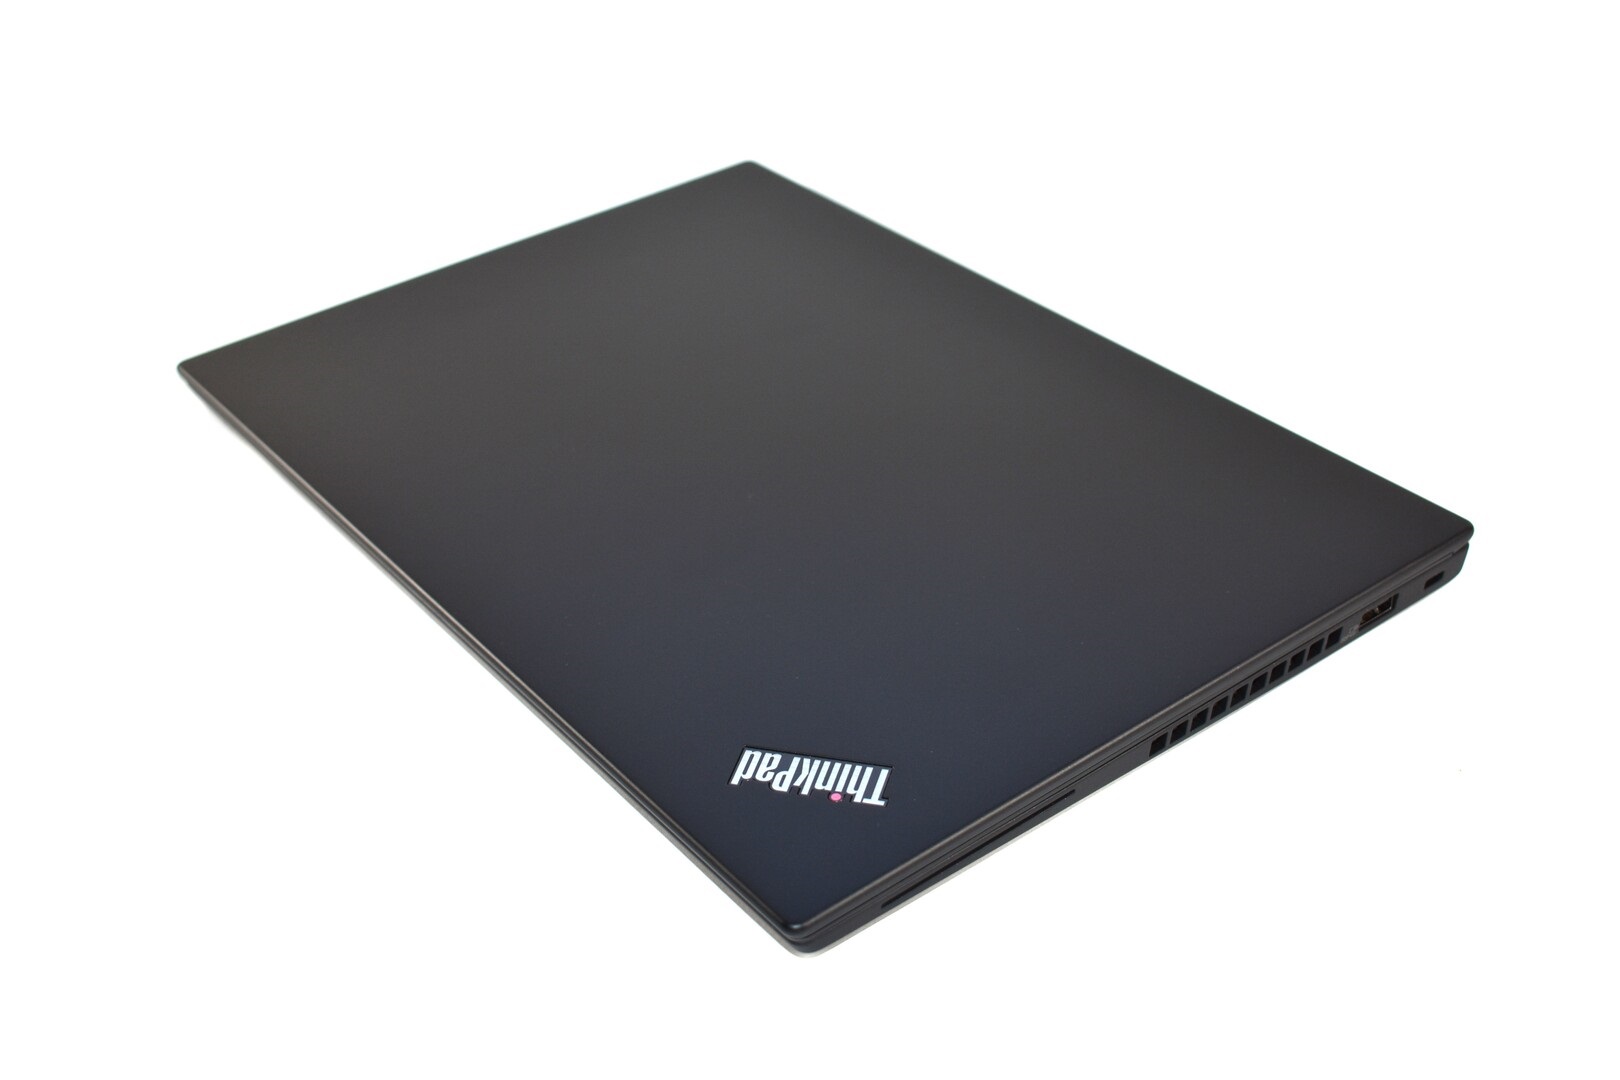 Đánh giá Laptop Lenovo Thinkpad X390: Có màn hình 13.3 inch, Chuyên trang tư vấn về Laptop